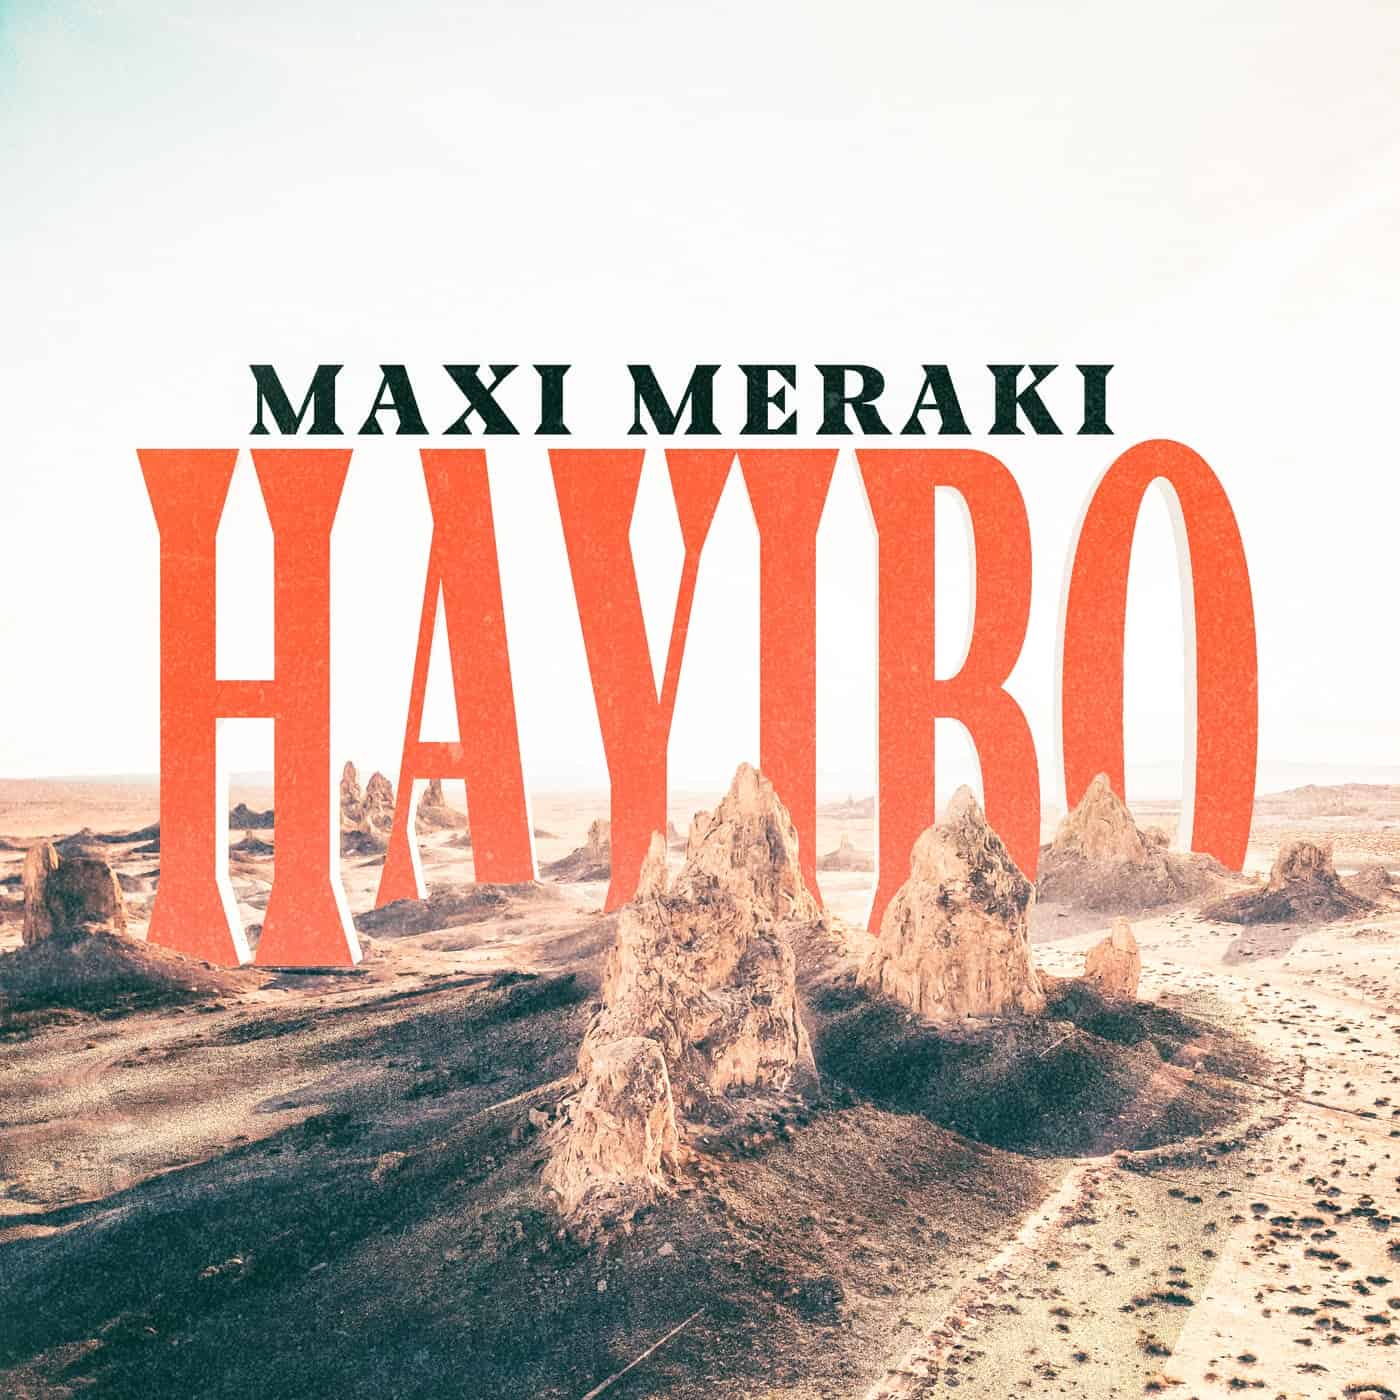 Download MAXI MERAKI - Hayibo on Electrobuzz